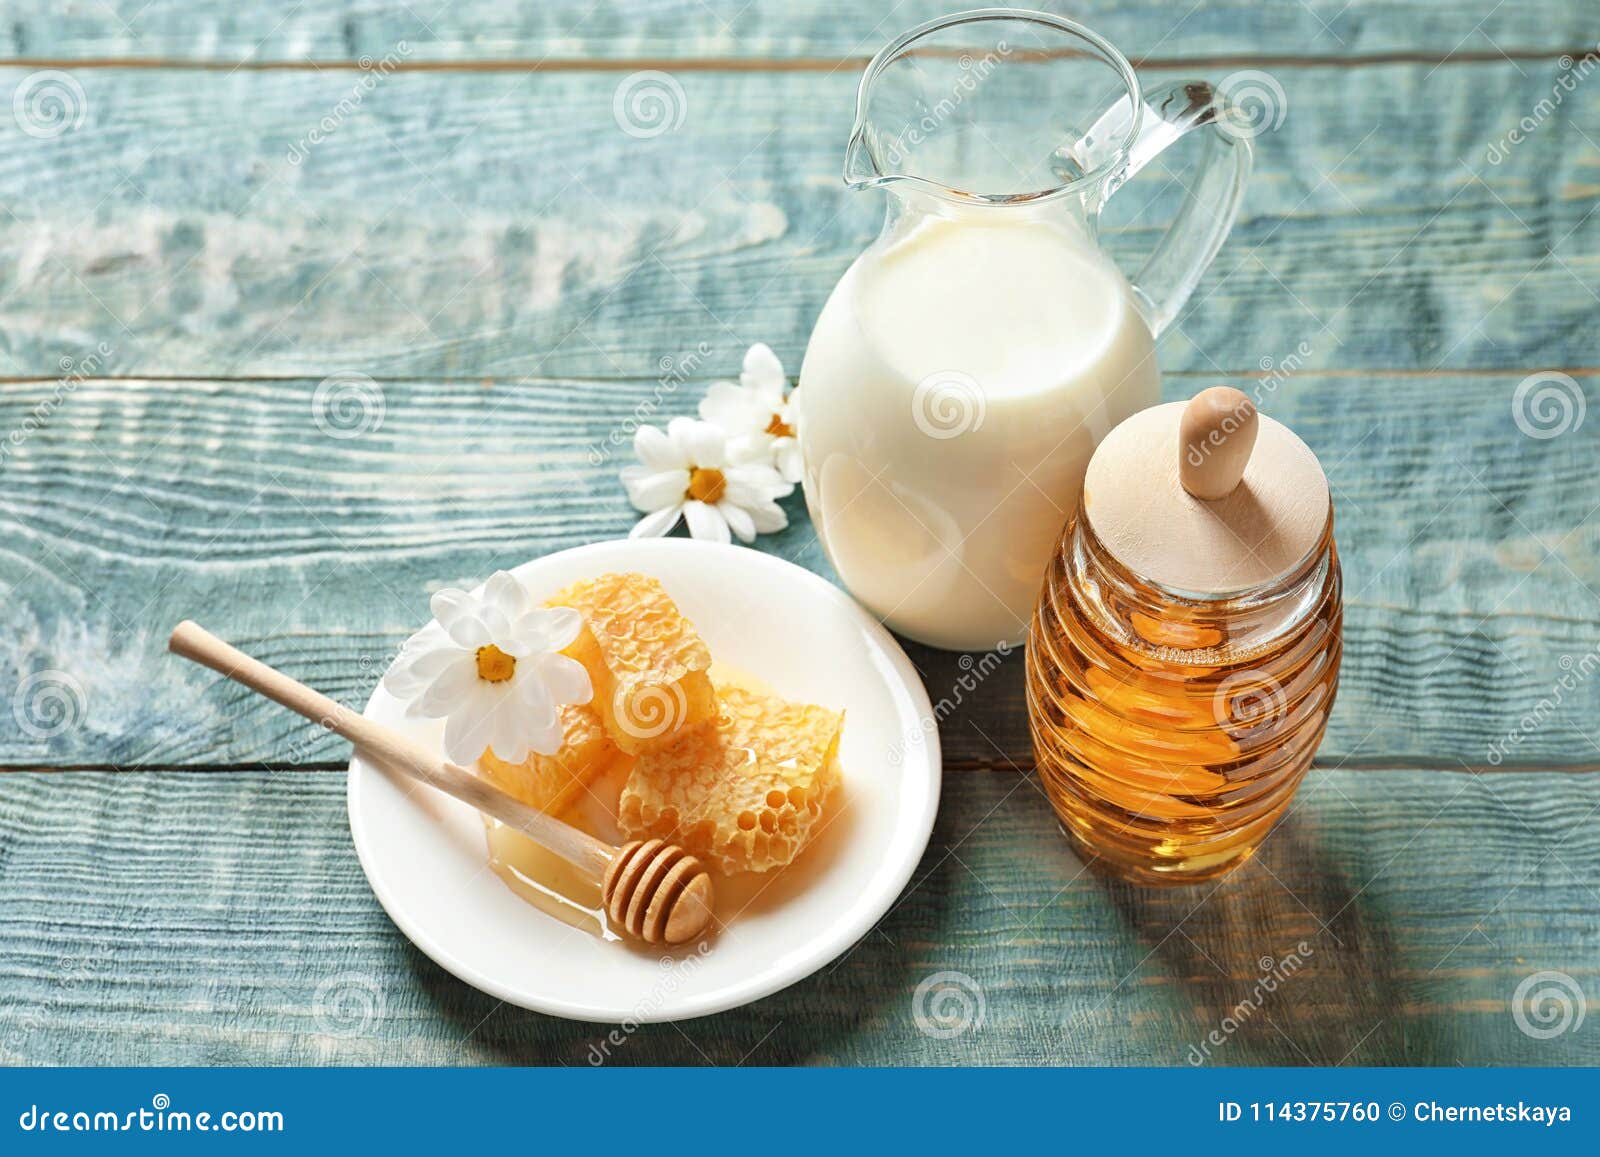 При кашле пить молоко с медом. Молоко и мед. Горячее молоко с медом. Молоко и мед красиво. Молоко и мед спа.